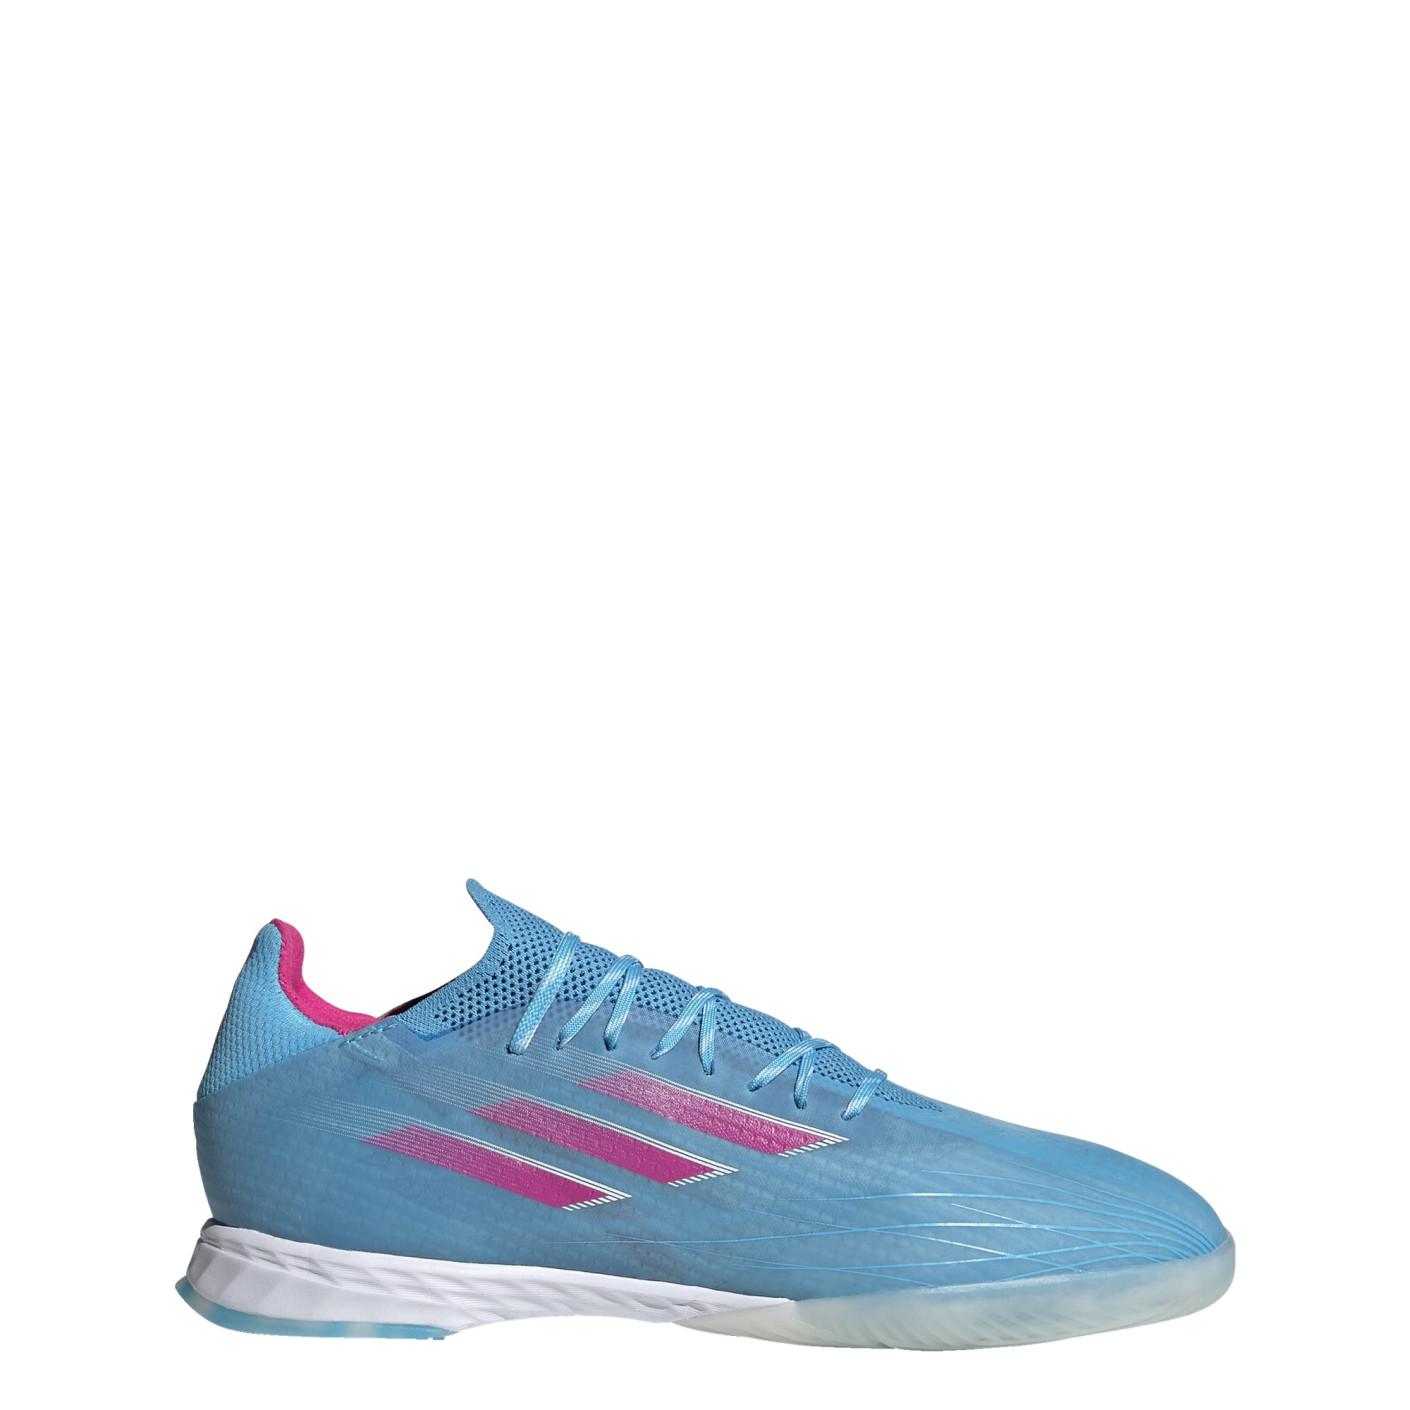 Vooruitzien paling Het formulier adidas X Speedflow.1 Zaalvoetbalschoenen (IN) Blauw Roze Wit